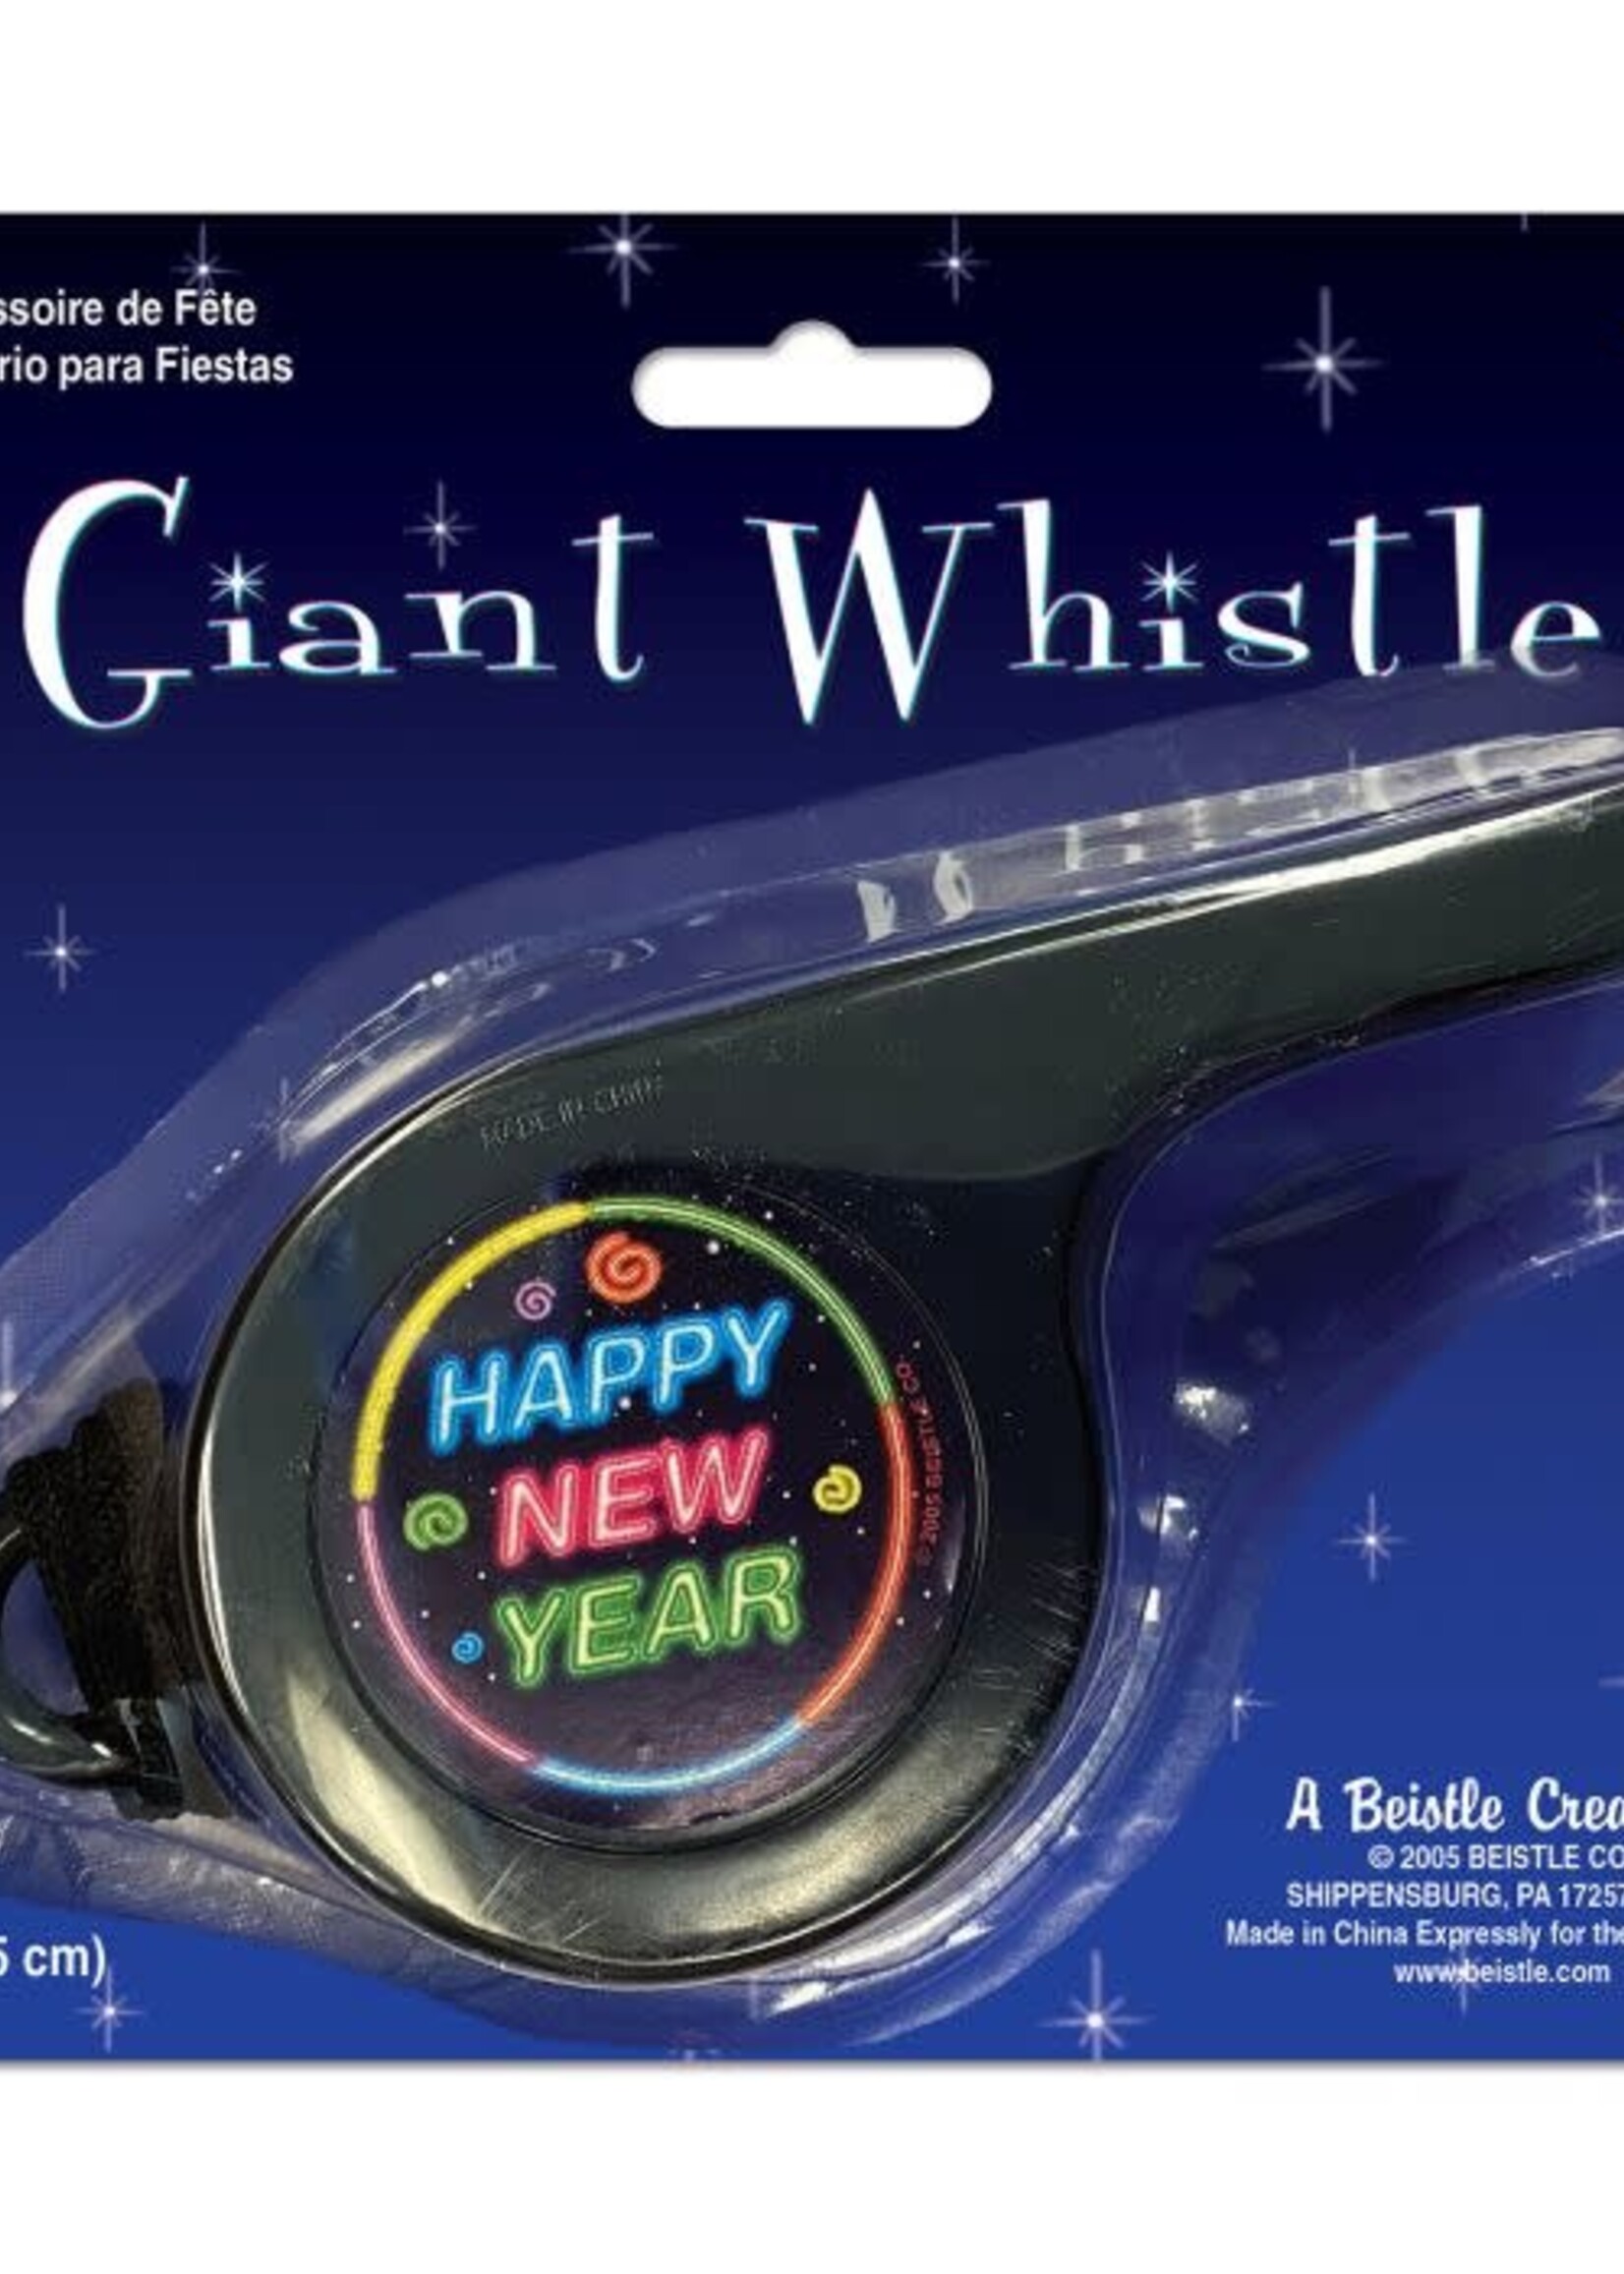 Giant Whistle